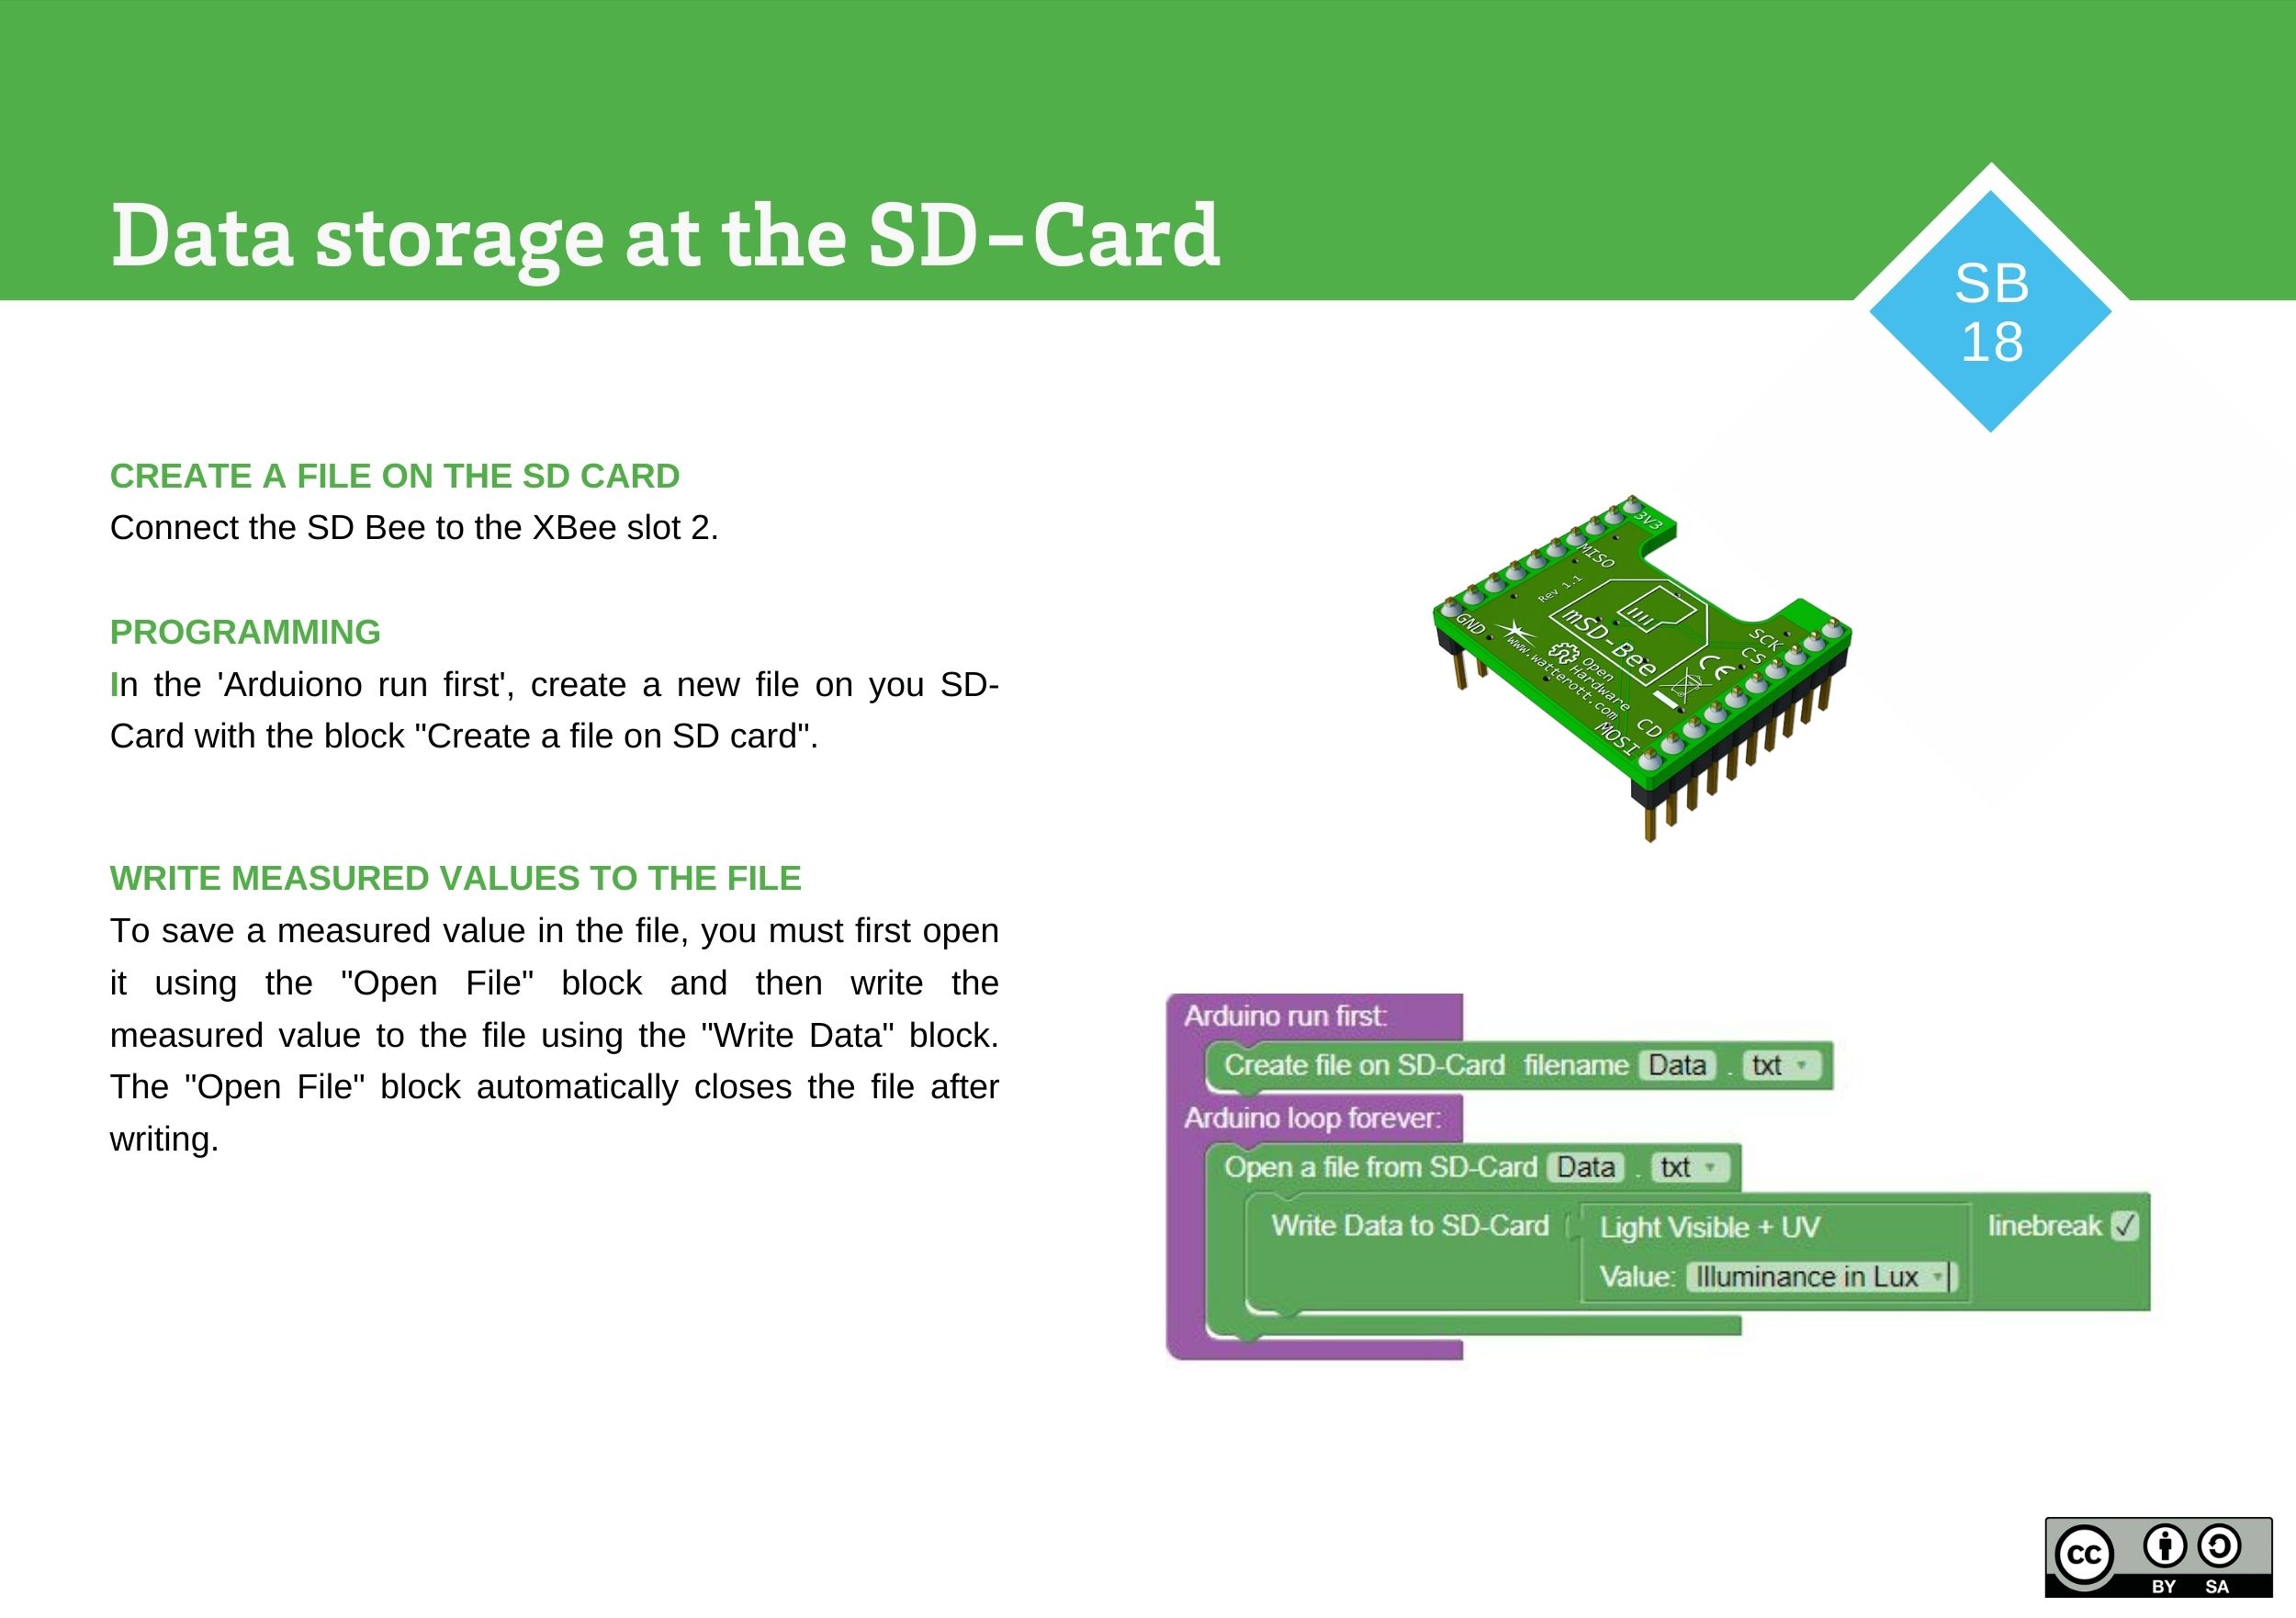 Saving Data on SD-Card